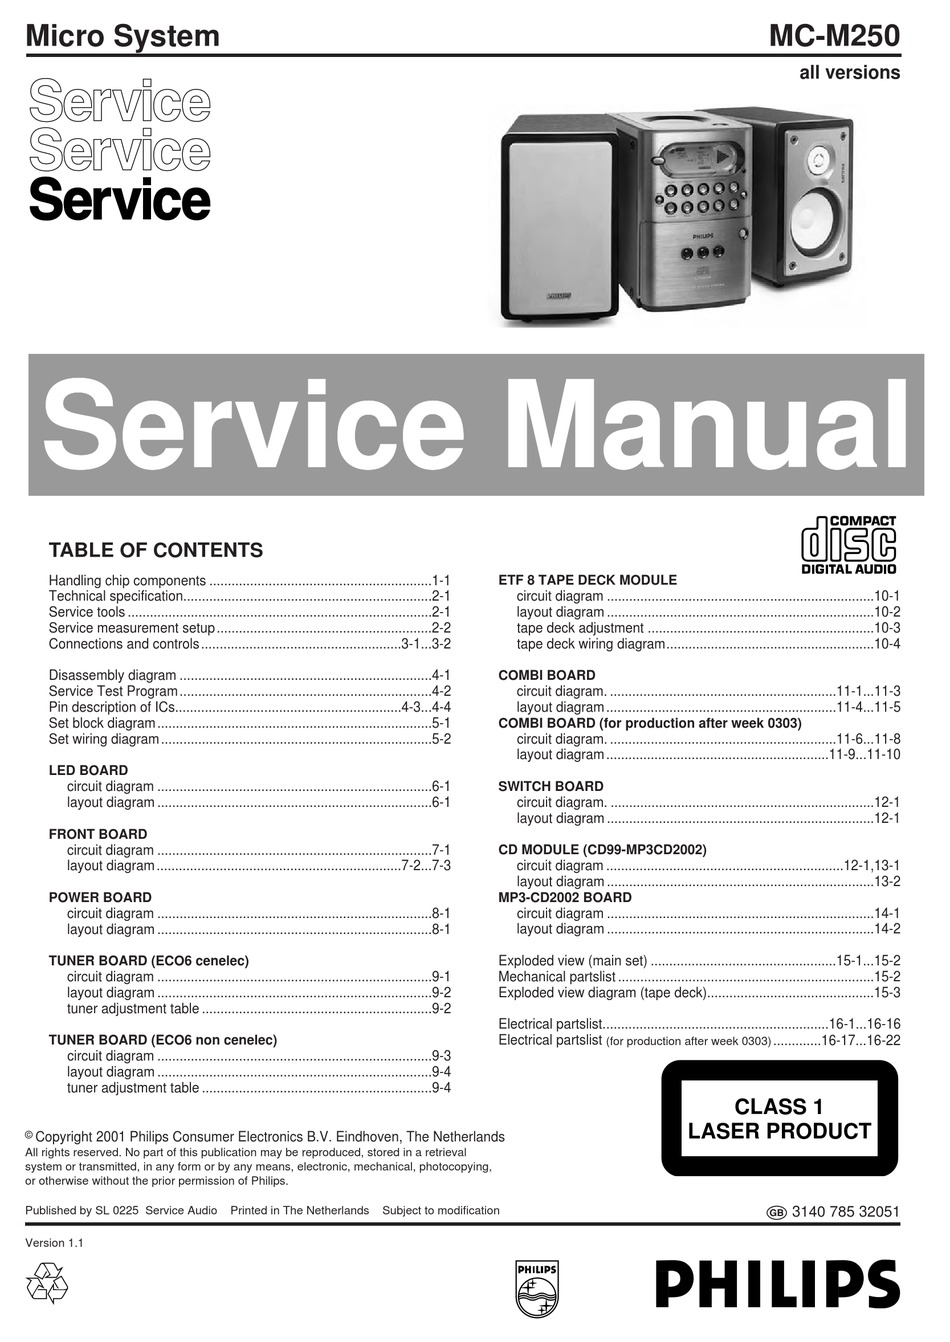 download service manuals